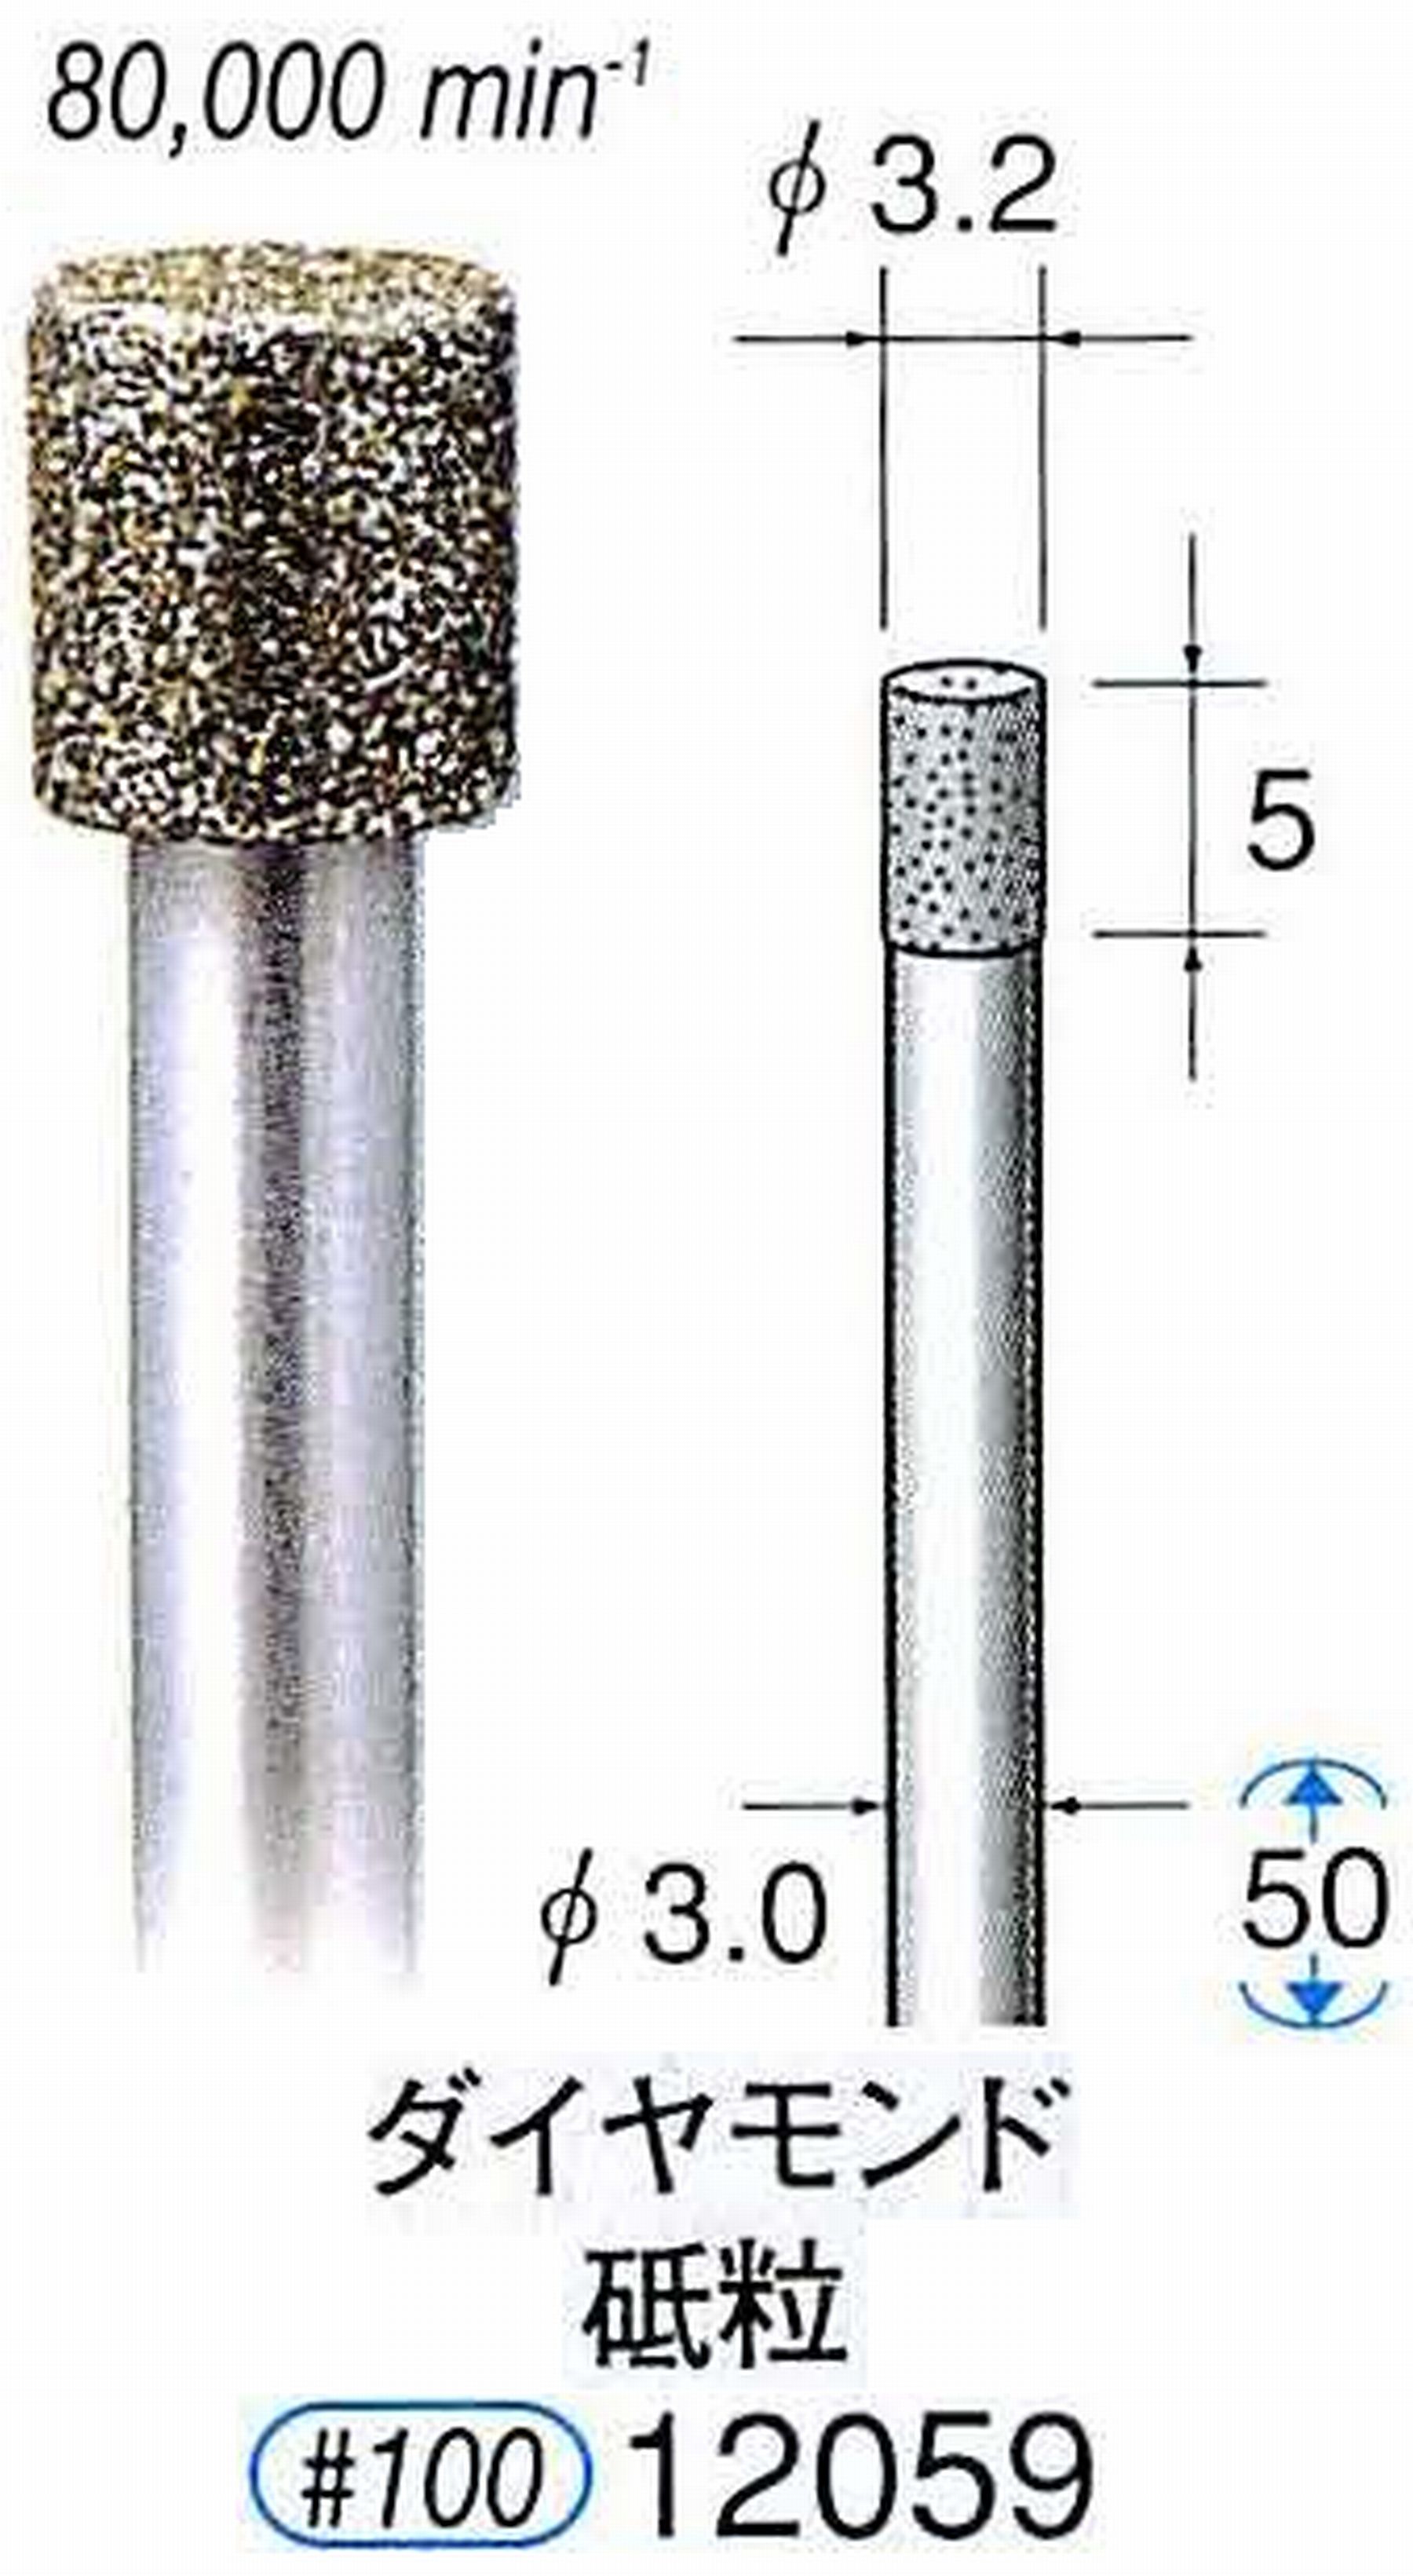 ナカニシ/NAKANISHI 電着ダイヤモンド ダイヤモンド砥粒 軸径(シャンク)φ3.0mm 12059